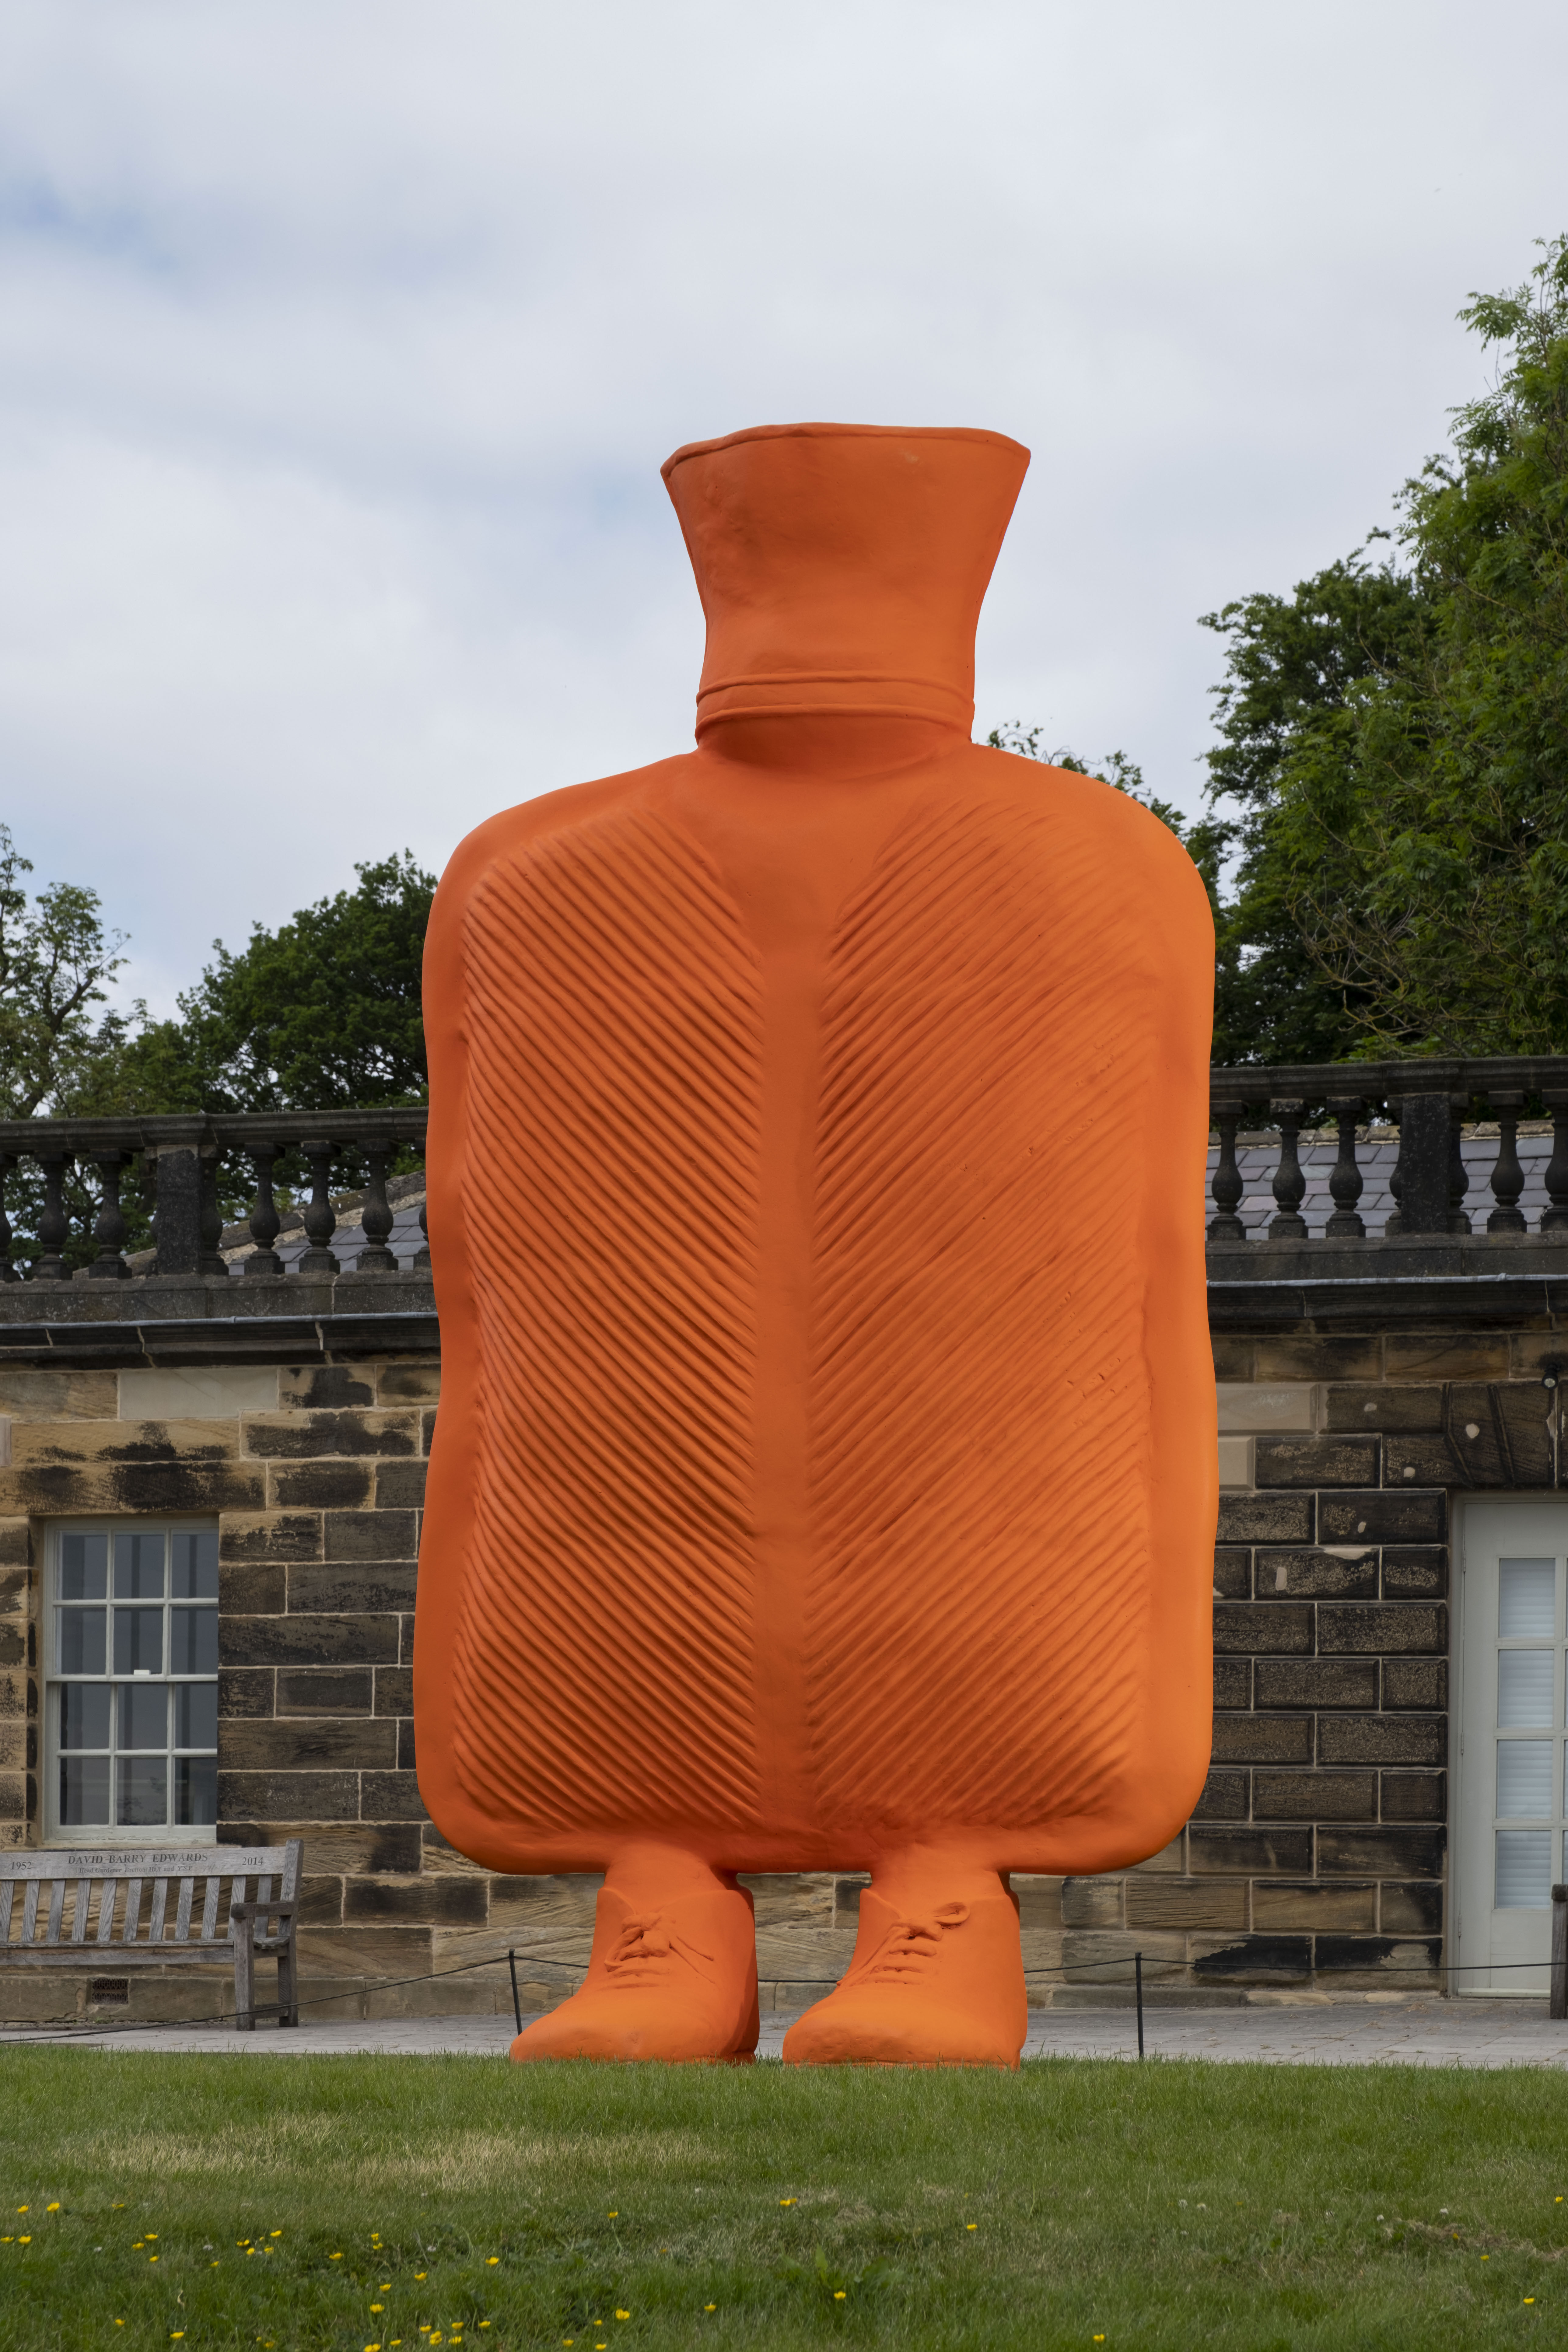 A giant orange hot water bottle.